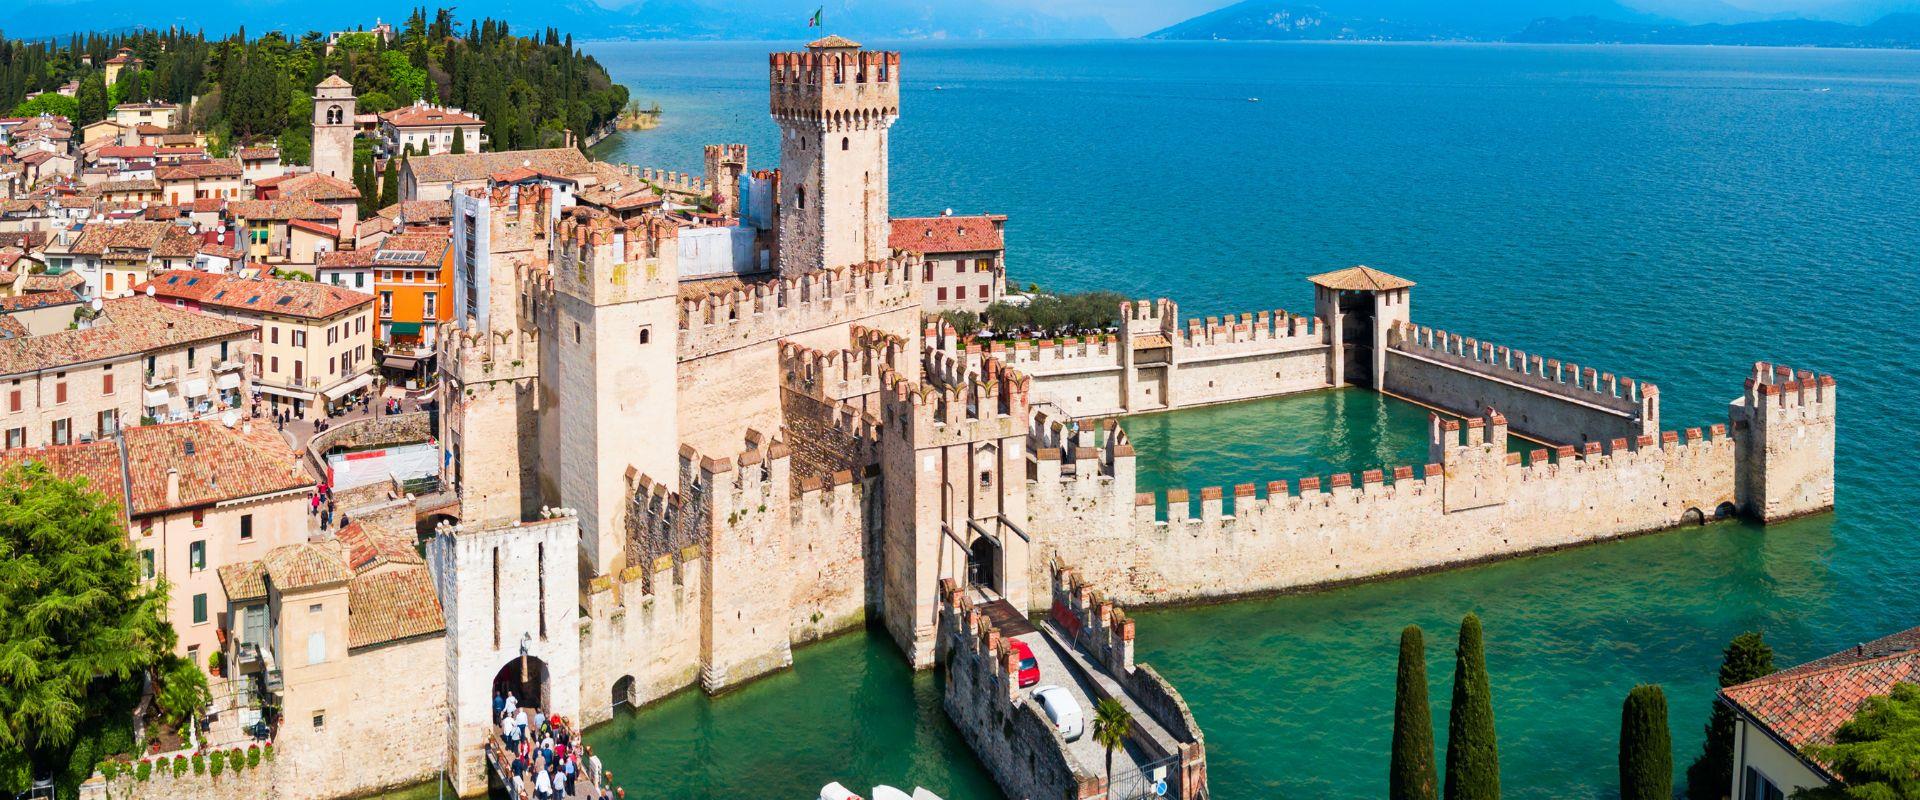 Scegli Best Western Hotel Turismo, alle porte di Verona e a soli 30 minuti dal Lago di Garda: trascorri un soggiorno di relax alla scoperta del territorio!